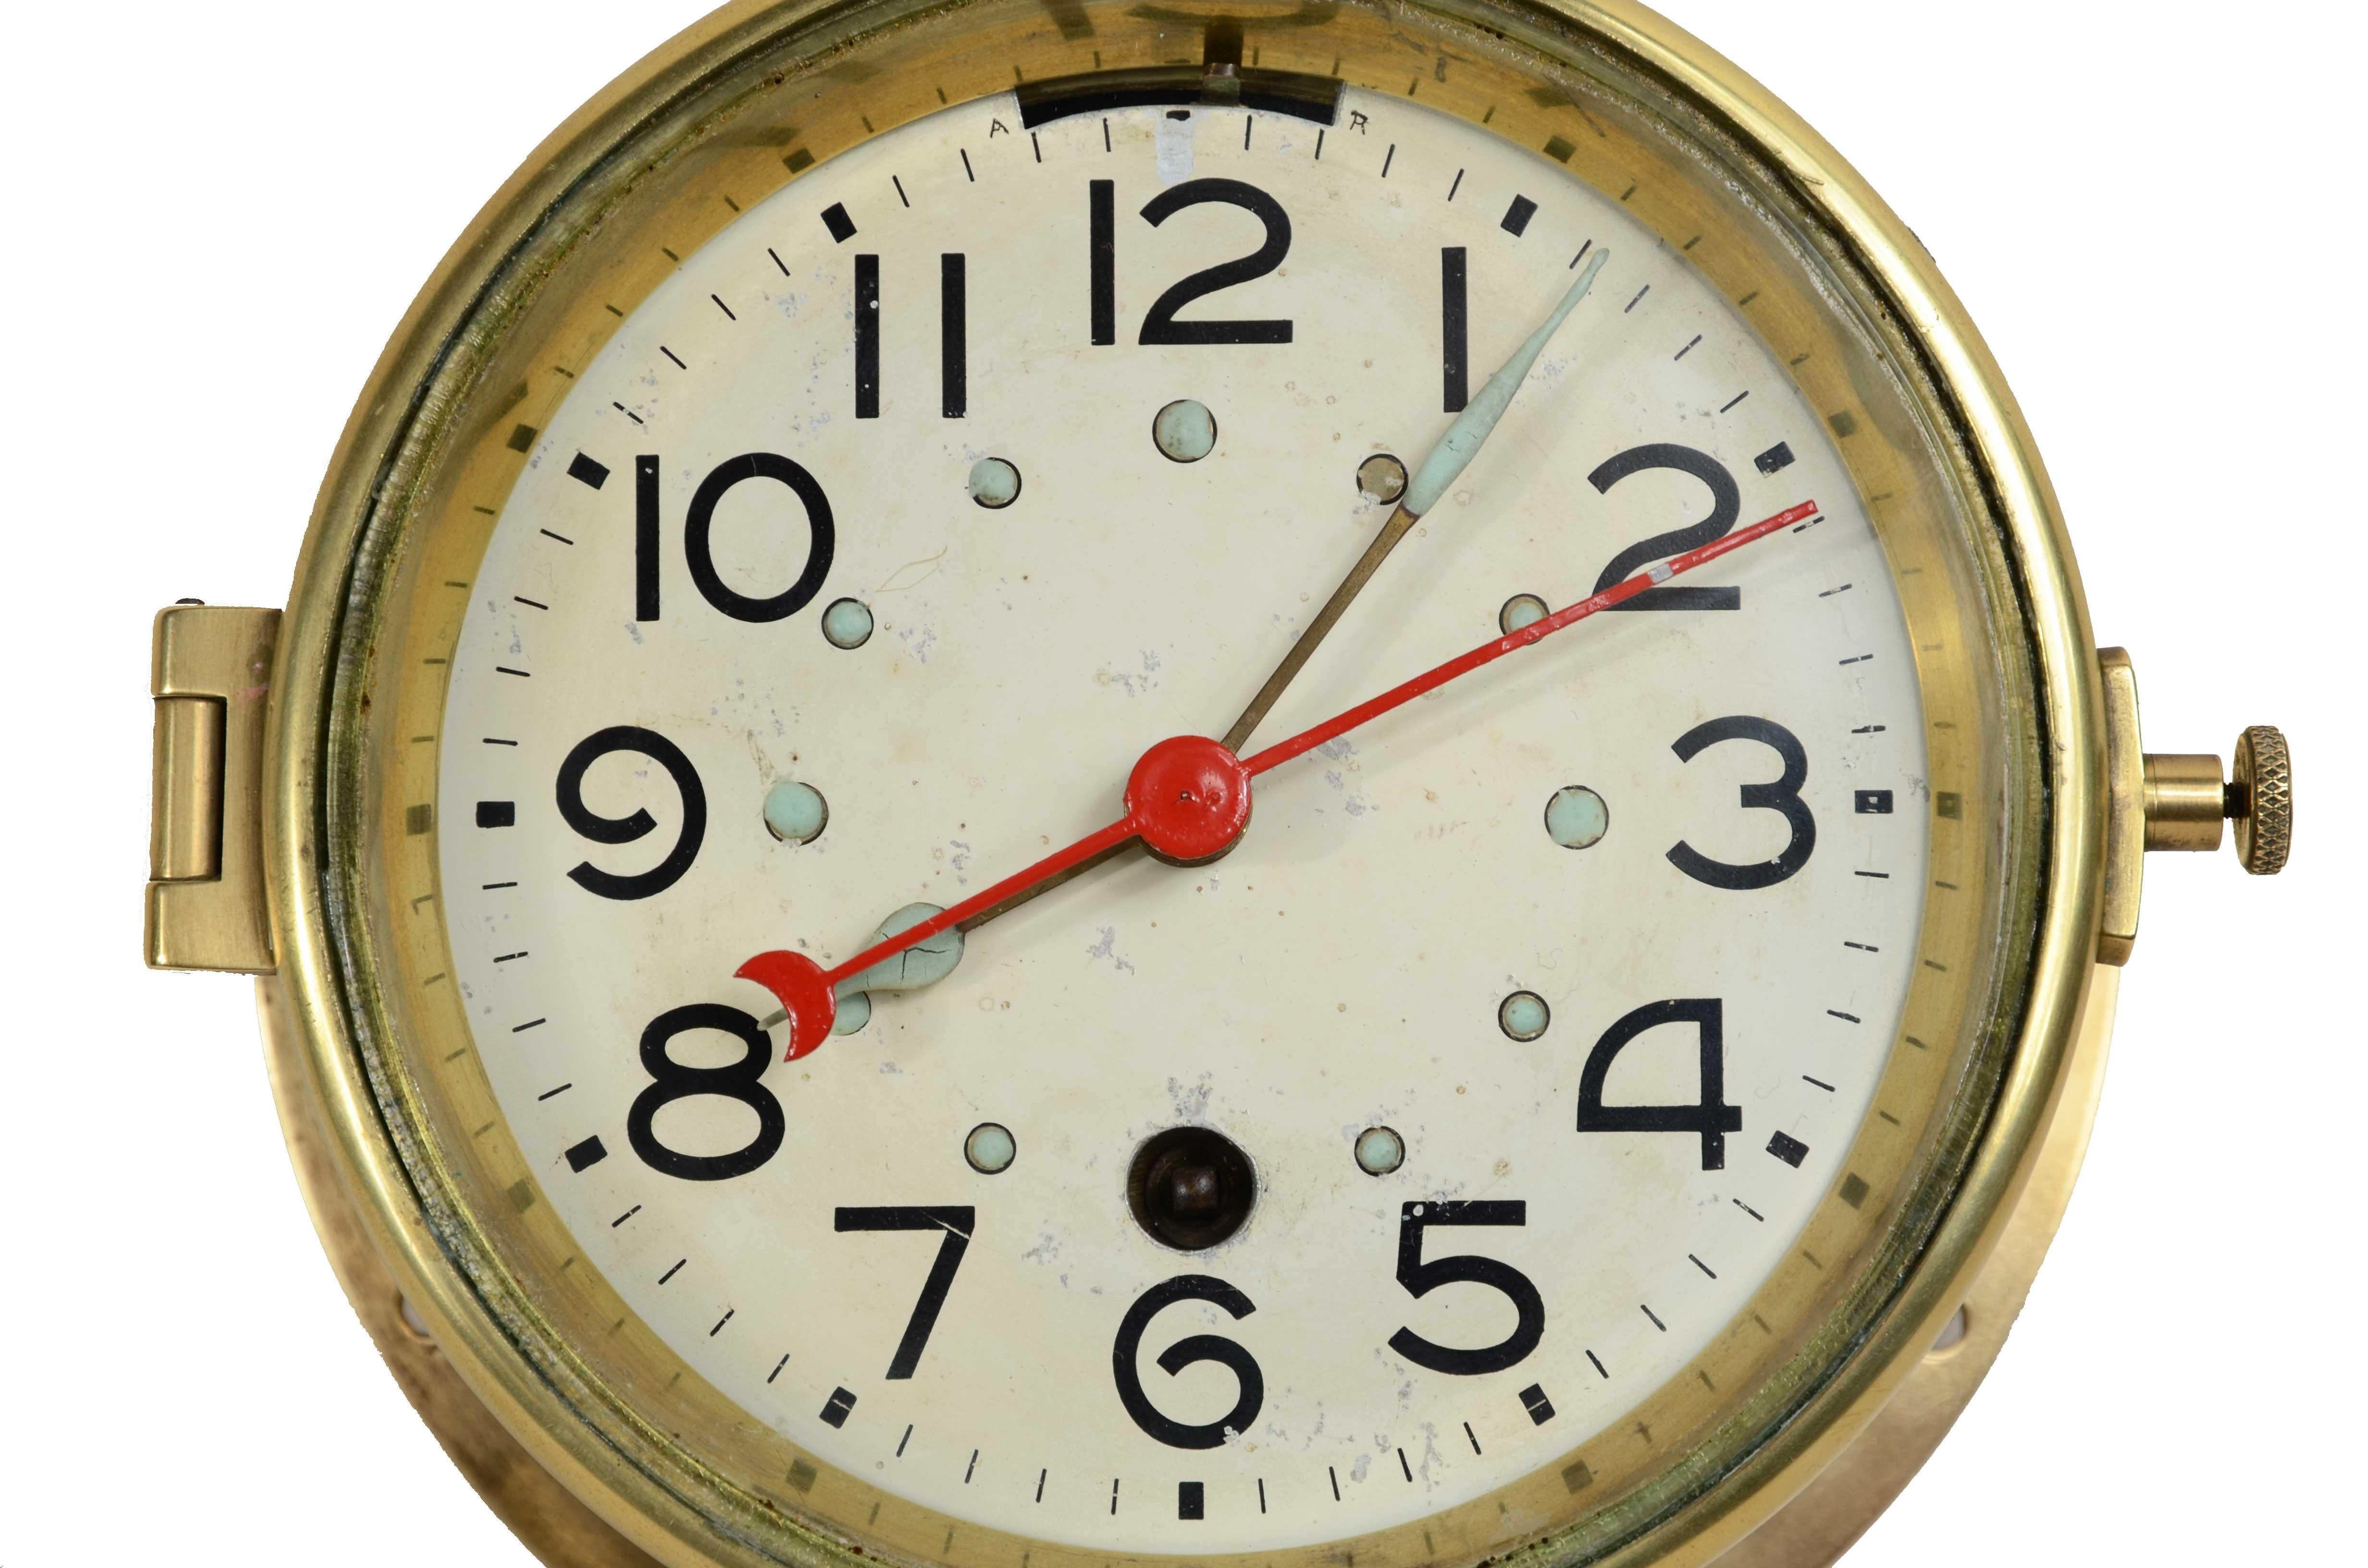 Pendule marine en laiton avec remontage à ressort de 7 jours, signée S. Marti Montbeliard  Grand Prix  Paris 1931, Samuel Marti était un horloger parisien renommé du 19ème siècle. Diamètre 16,8 cm - pouces 6,7, profondeur 7,5 cm - pouces 2,8.